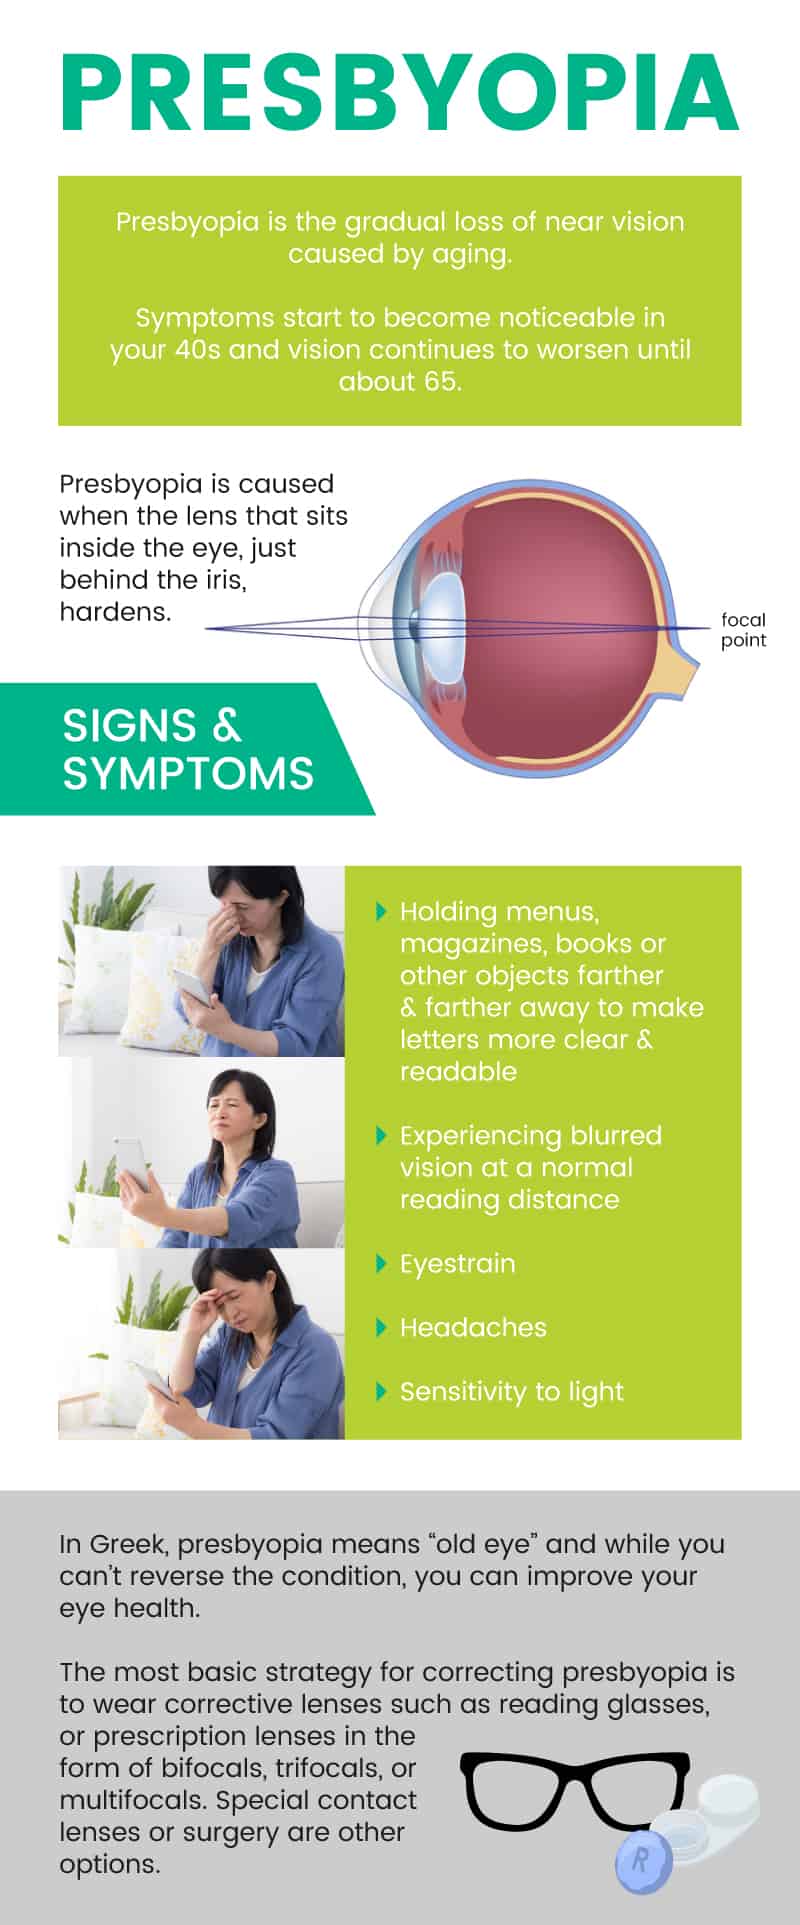 About presbyopia - Dr. Axe